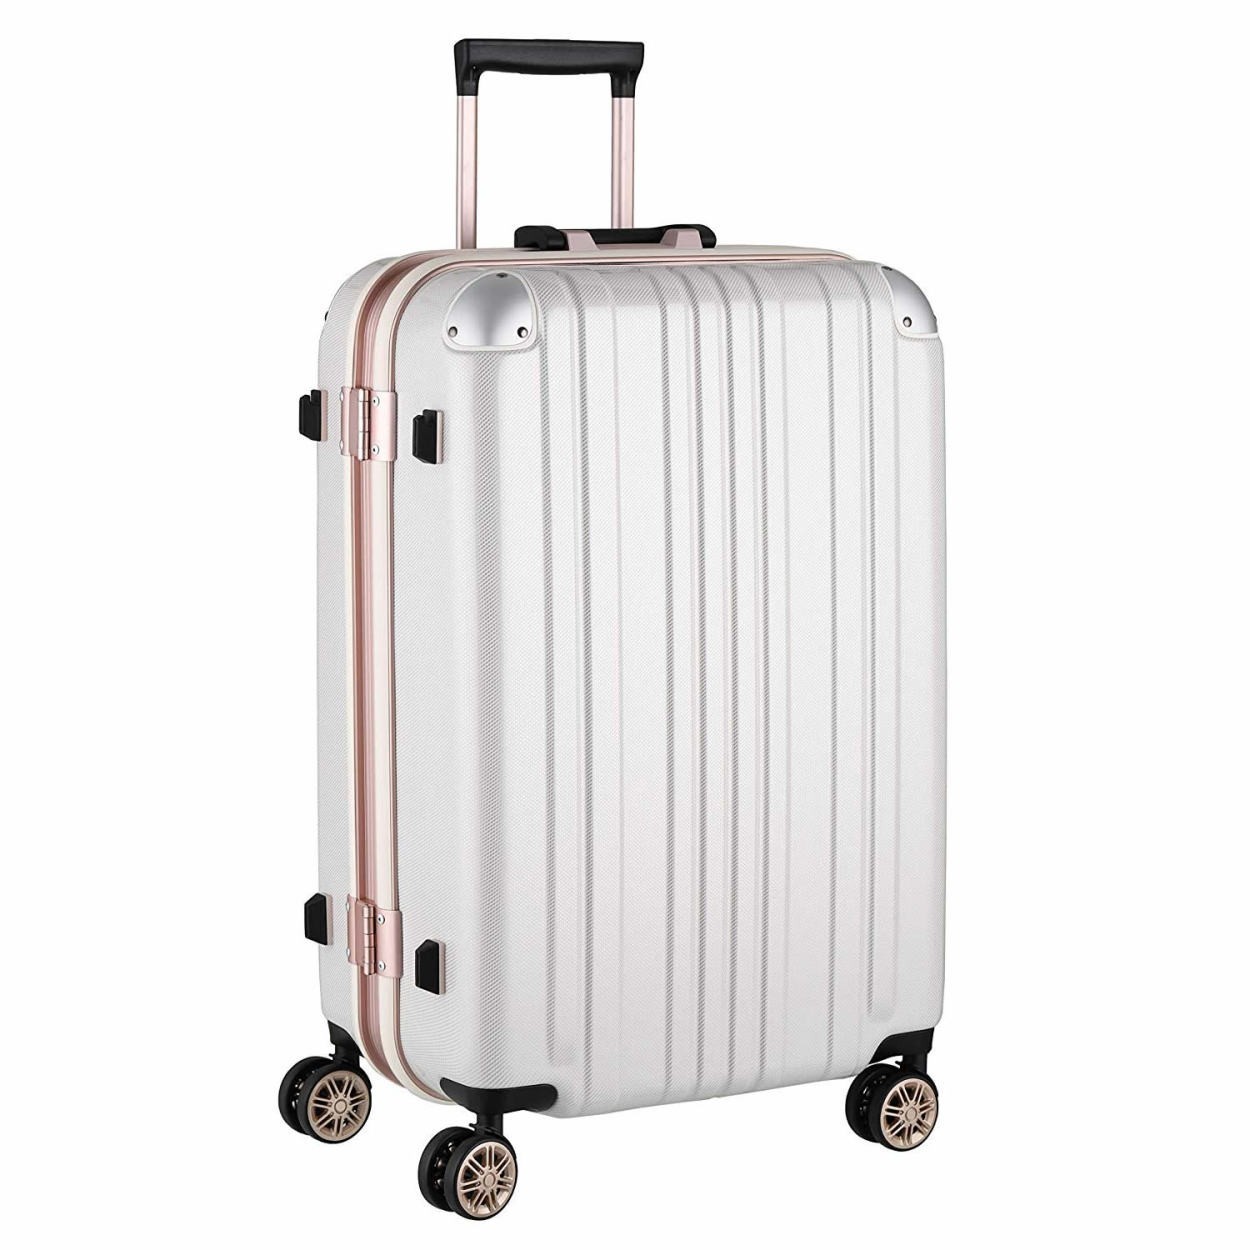 スーツケース キャリーバッグ トランクケース レディースバッグ Lサイズ 大型 超軽量 おしゃれ かわいい キャリーケース キャリーバッグ 5122 67 5122 68 スーツケースのマリエナマキ 通販 Yahoo ショッピング